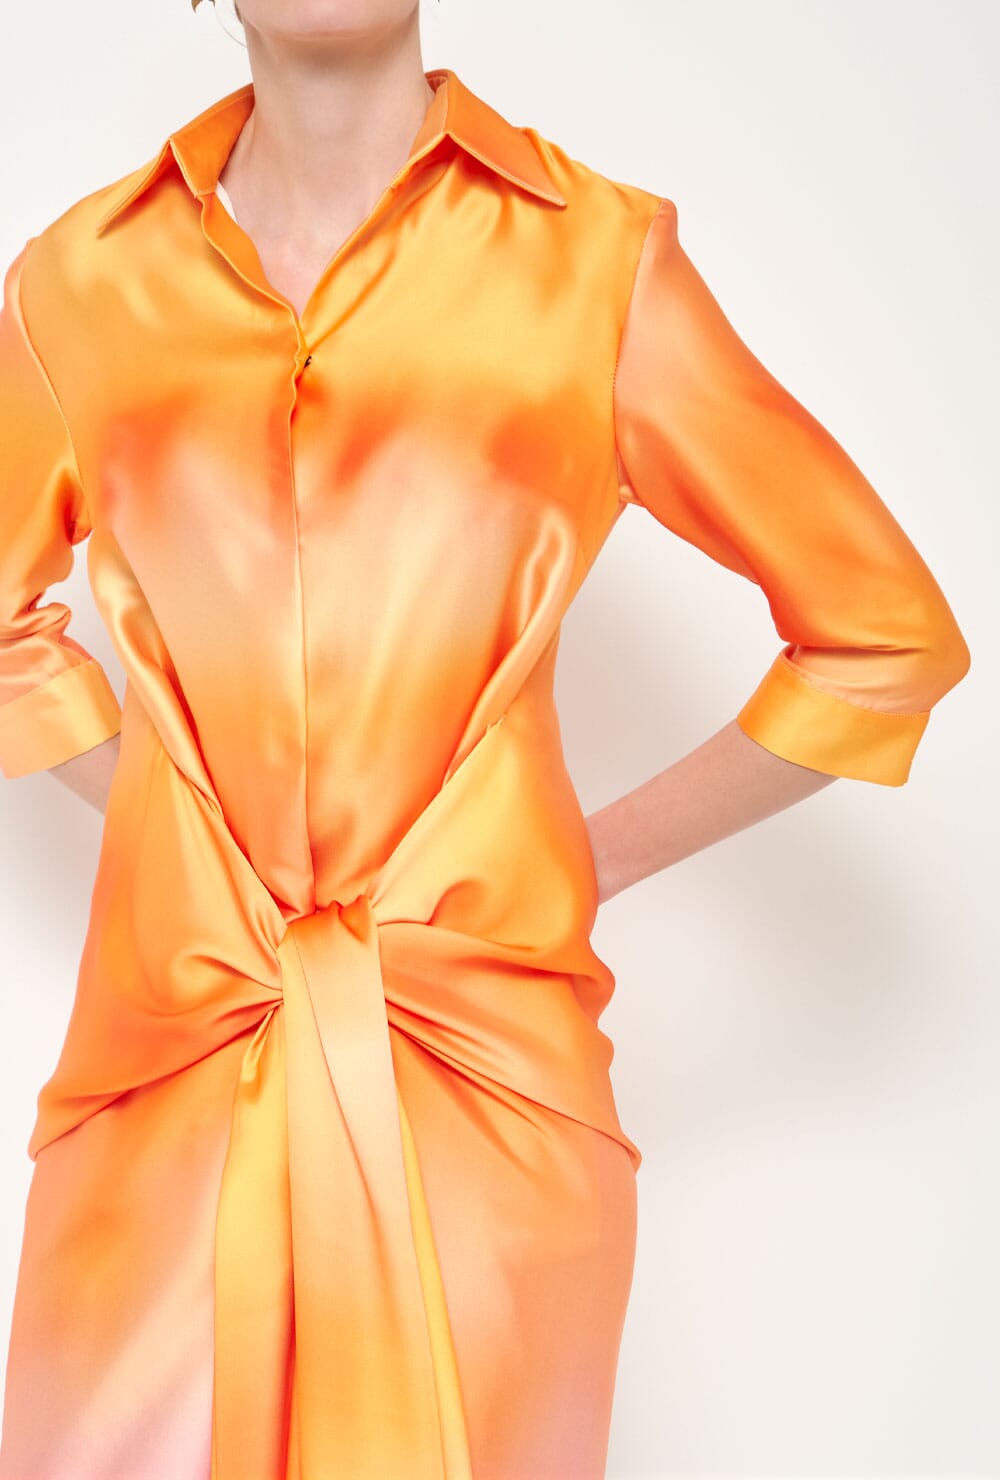 Vestido Ava Camisero Lazada Lila Naranja Dresses Duyos 